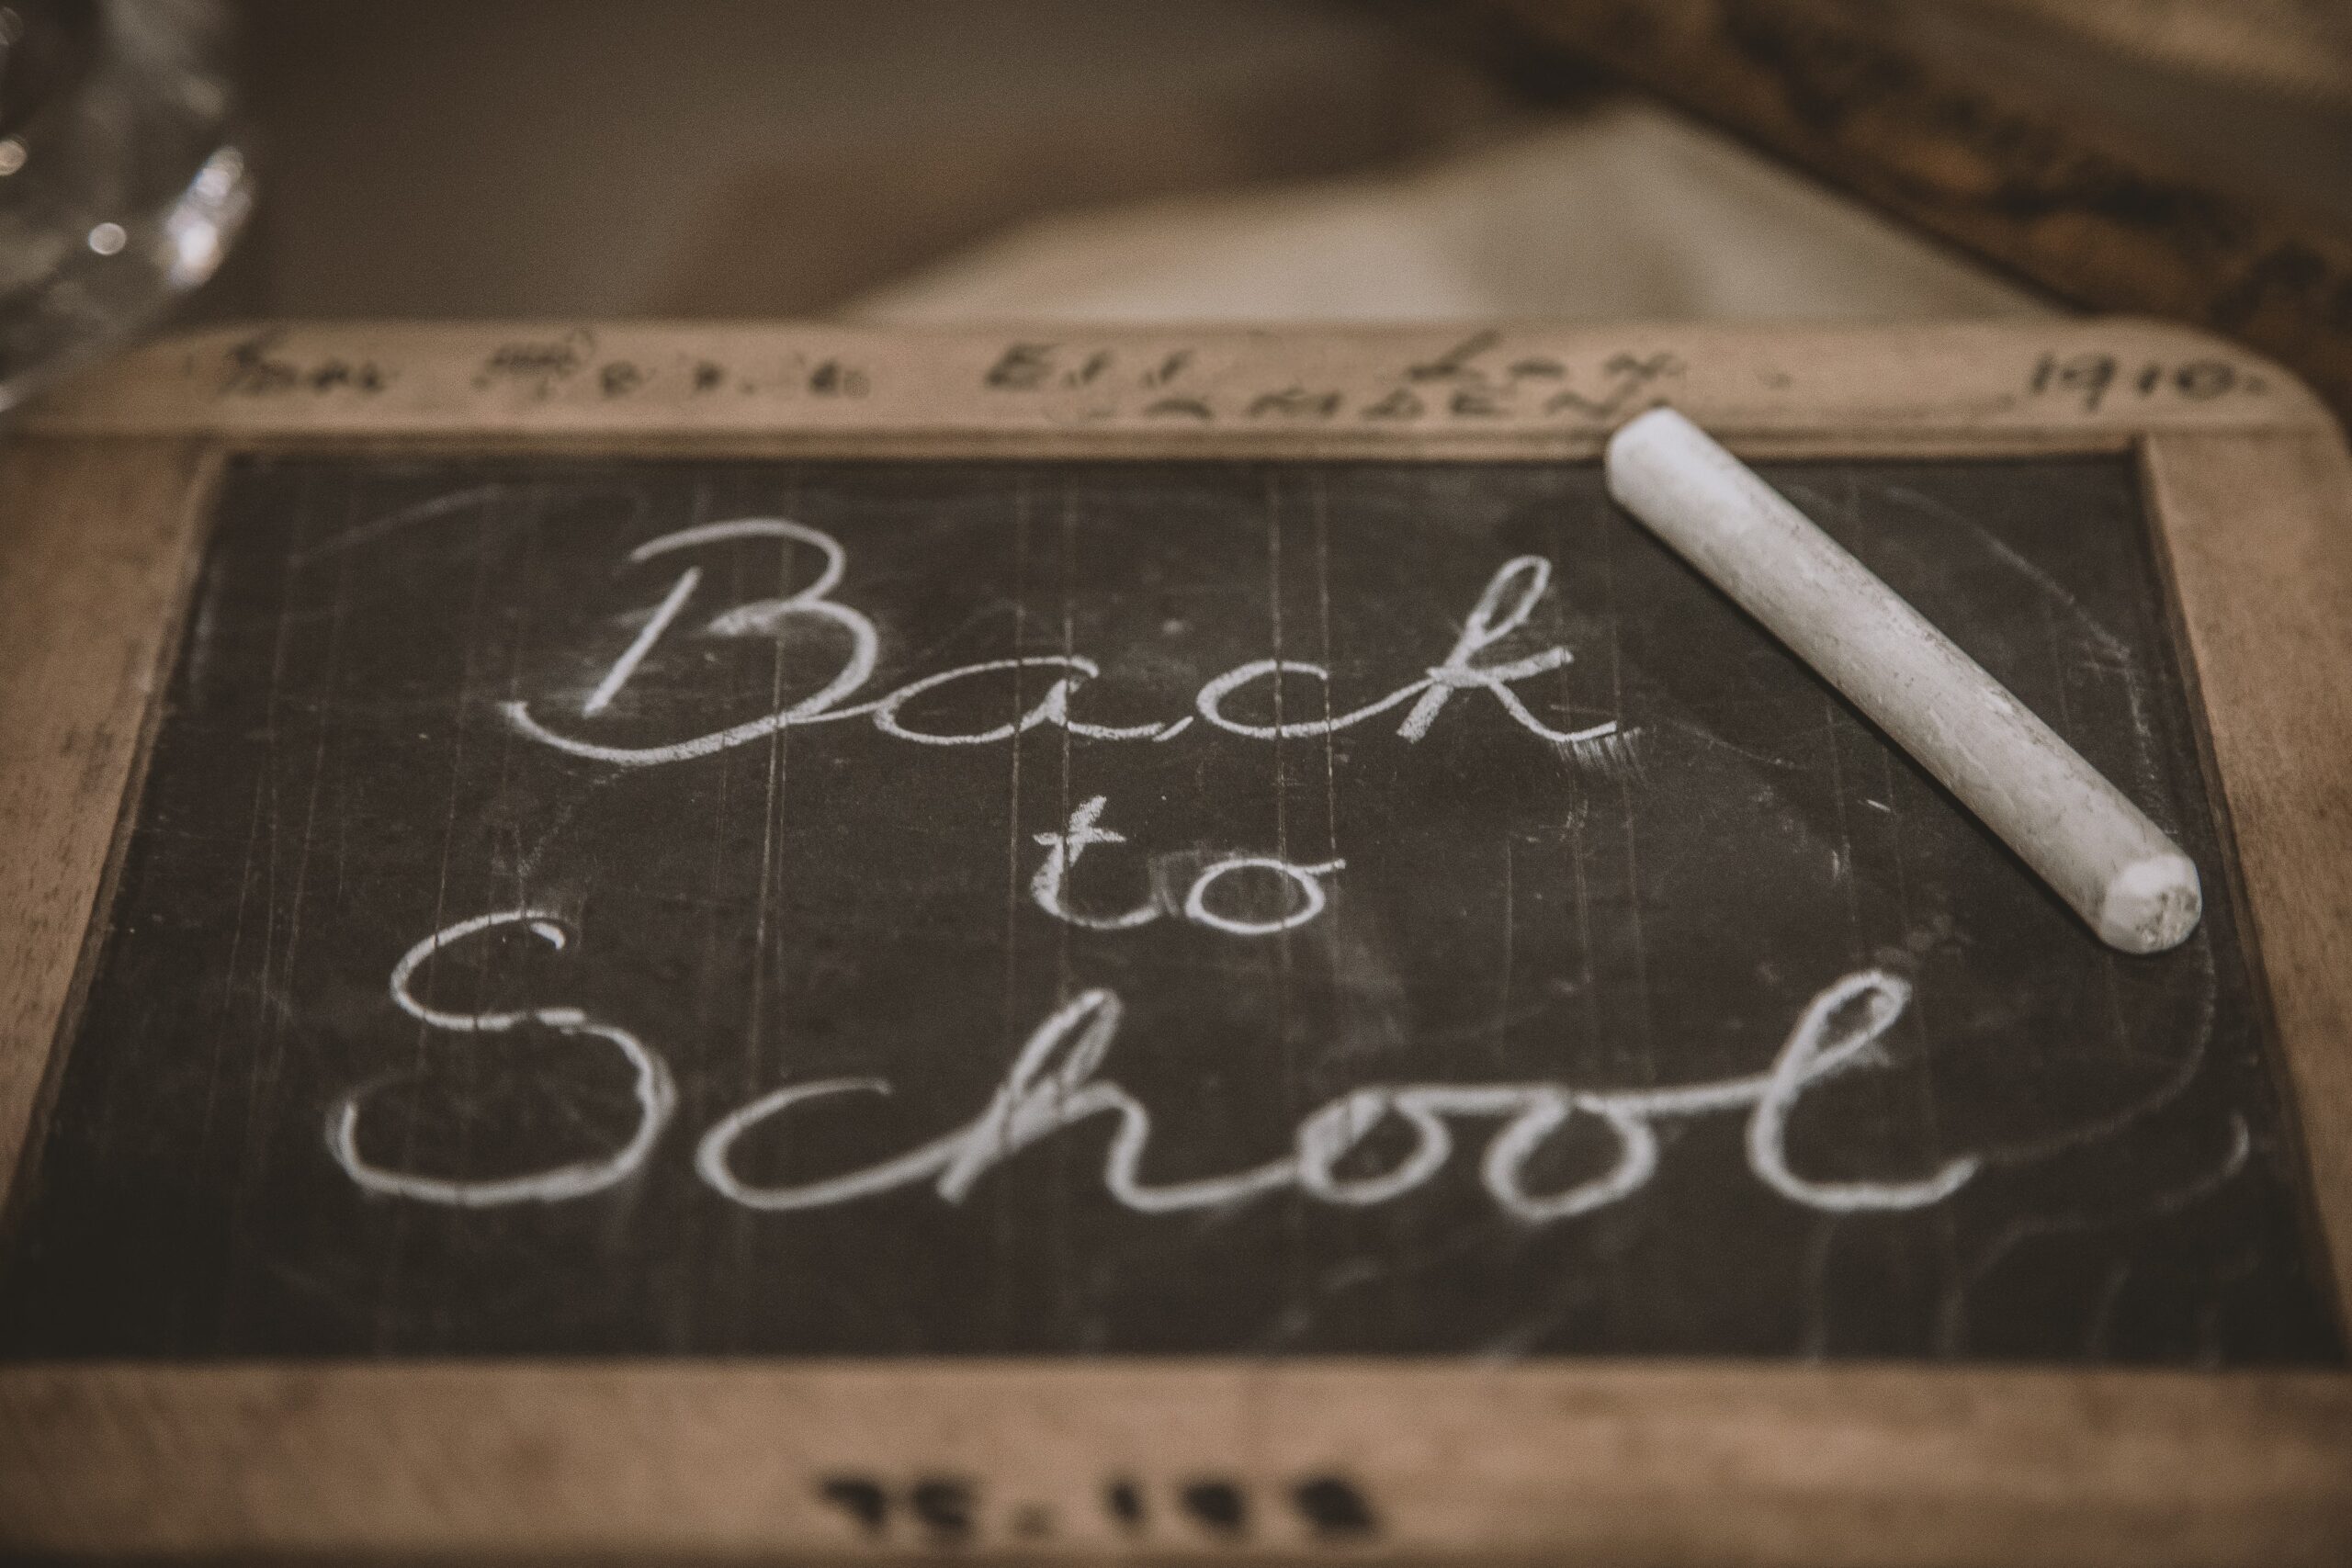 'Back to School' written on a chalkboard